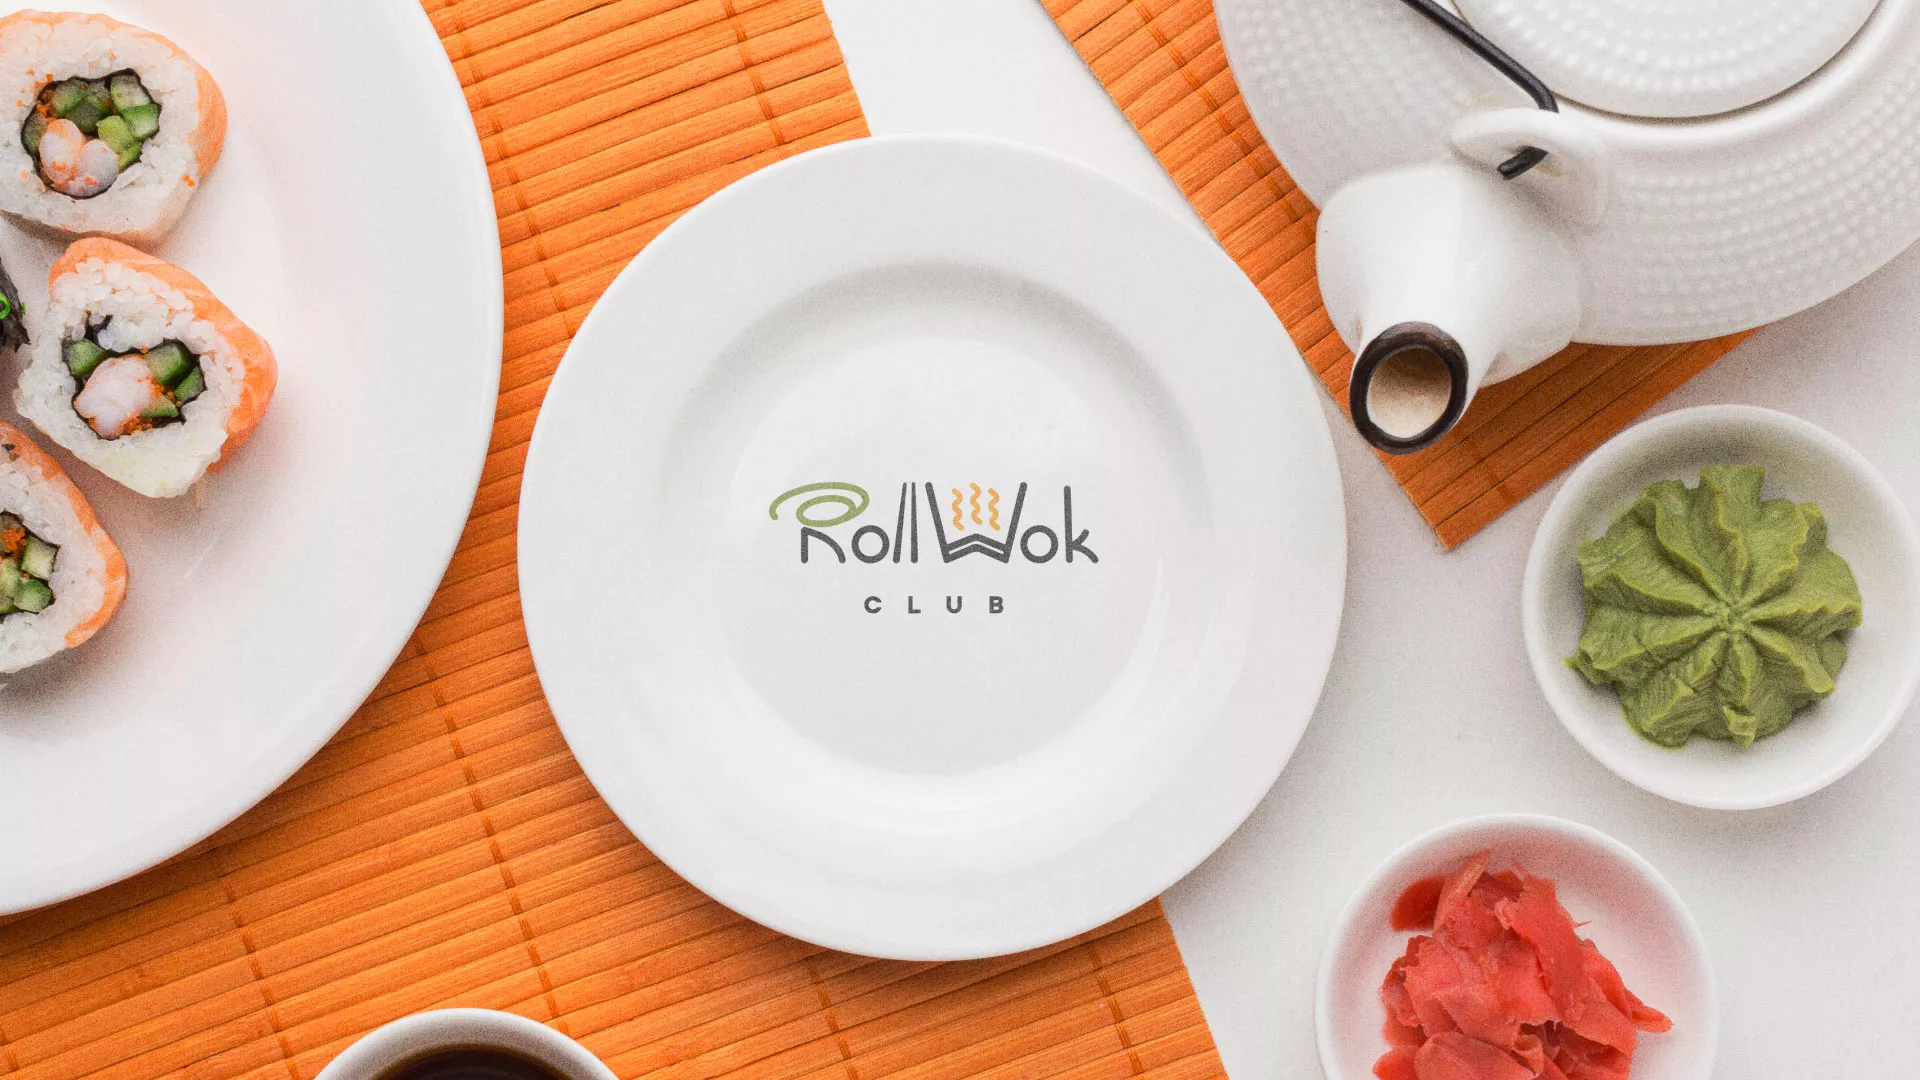 Разработка логотипа и фирменного стиля суши-бара «Roll Wok Club» в Выборге